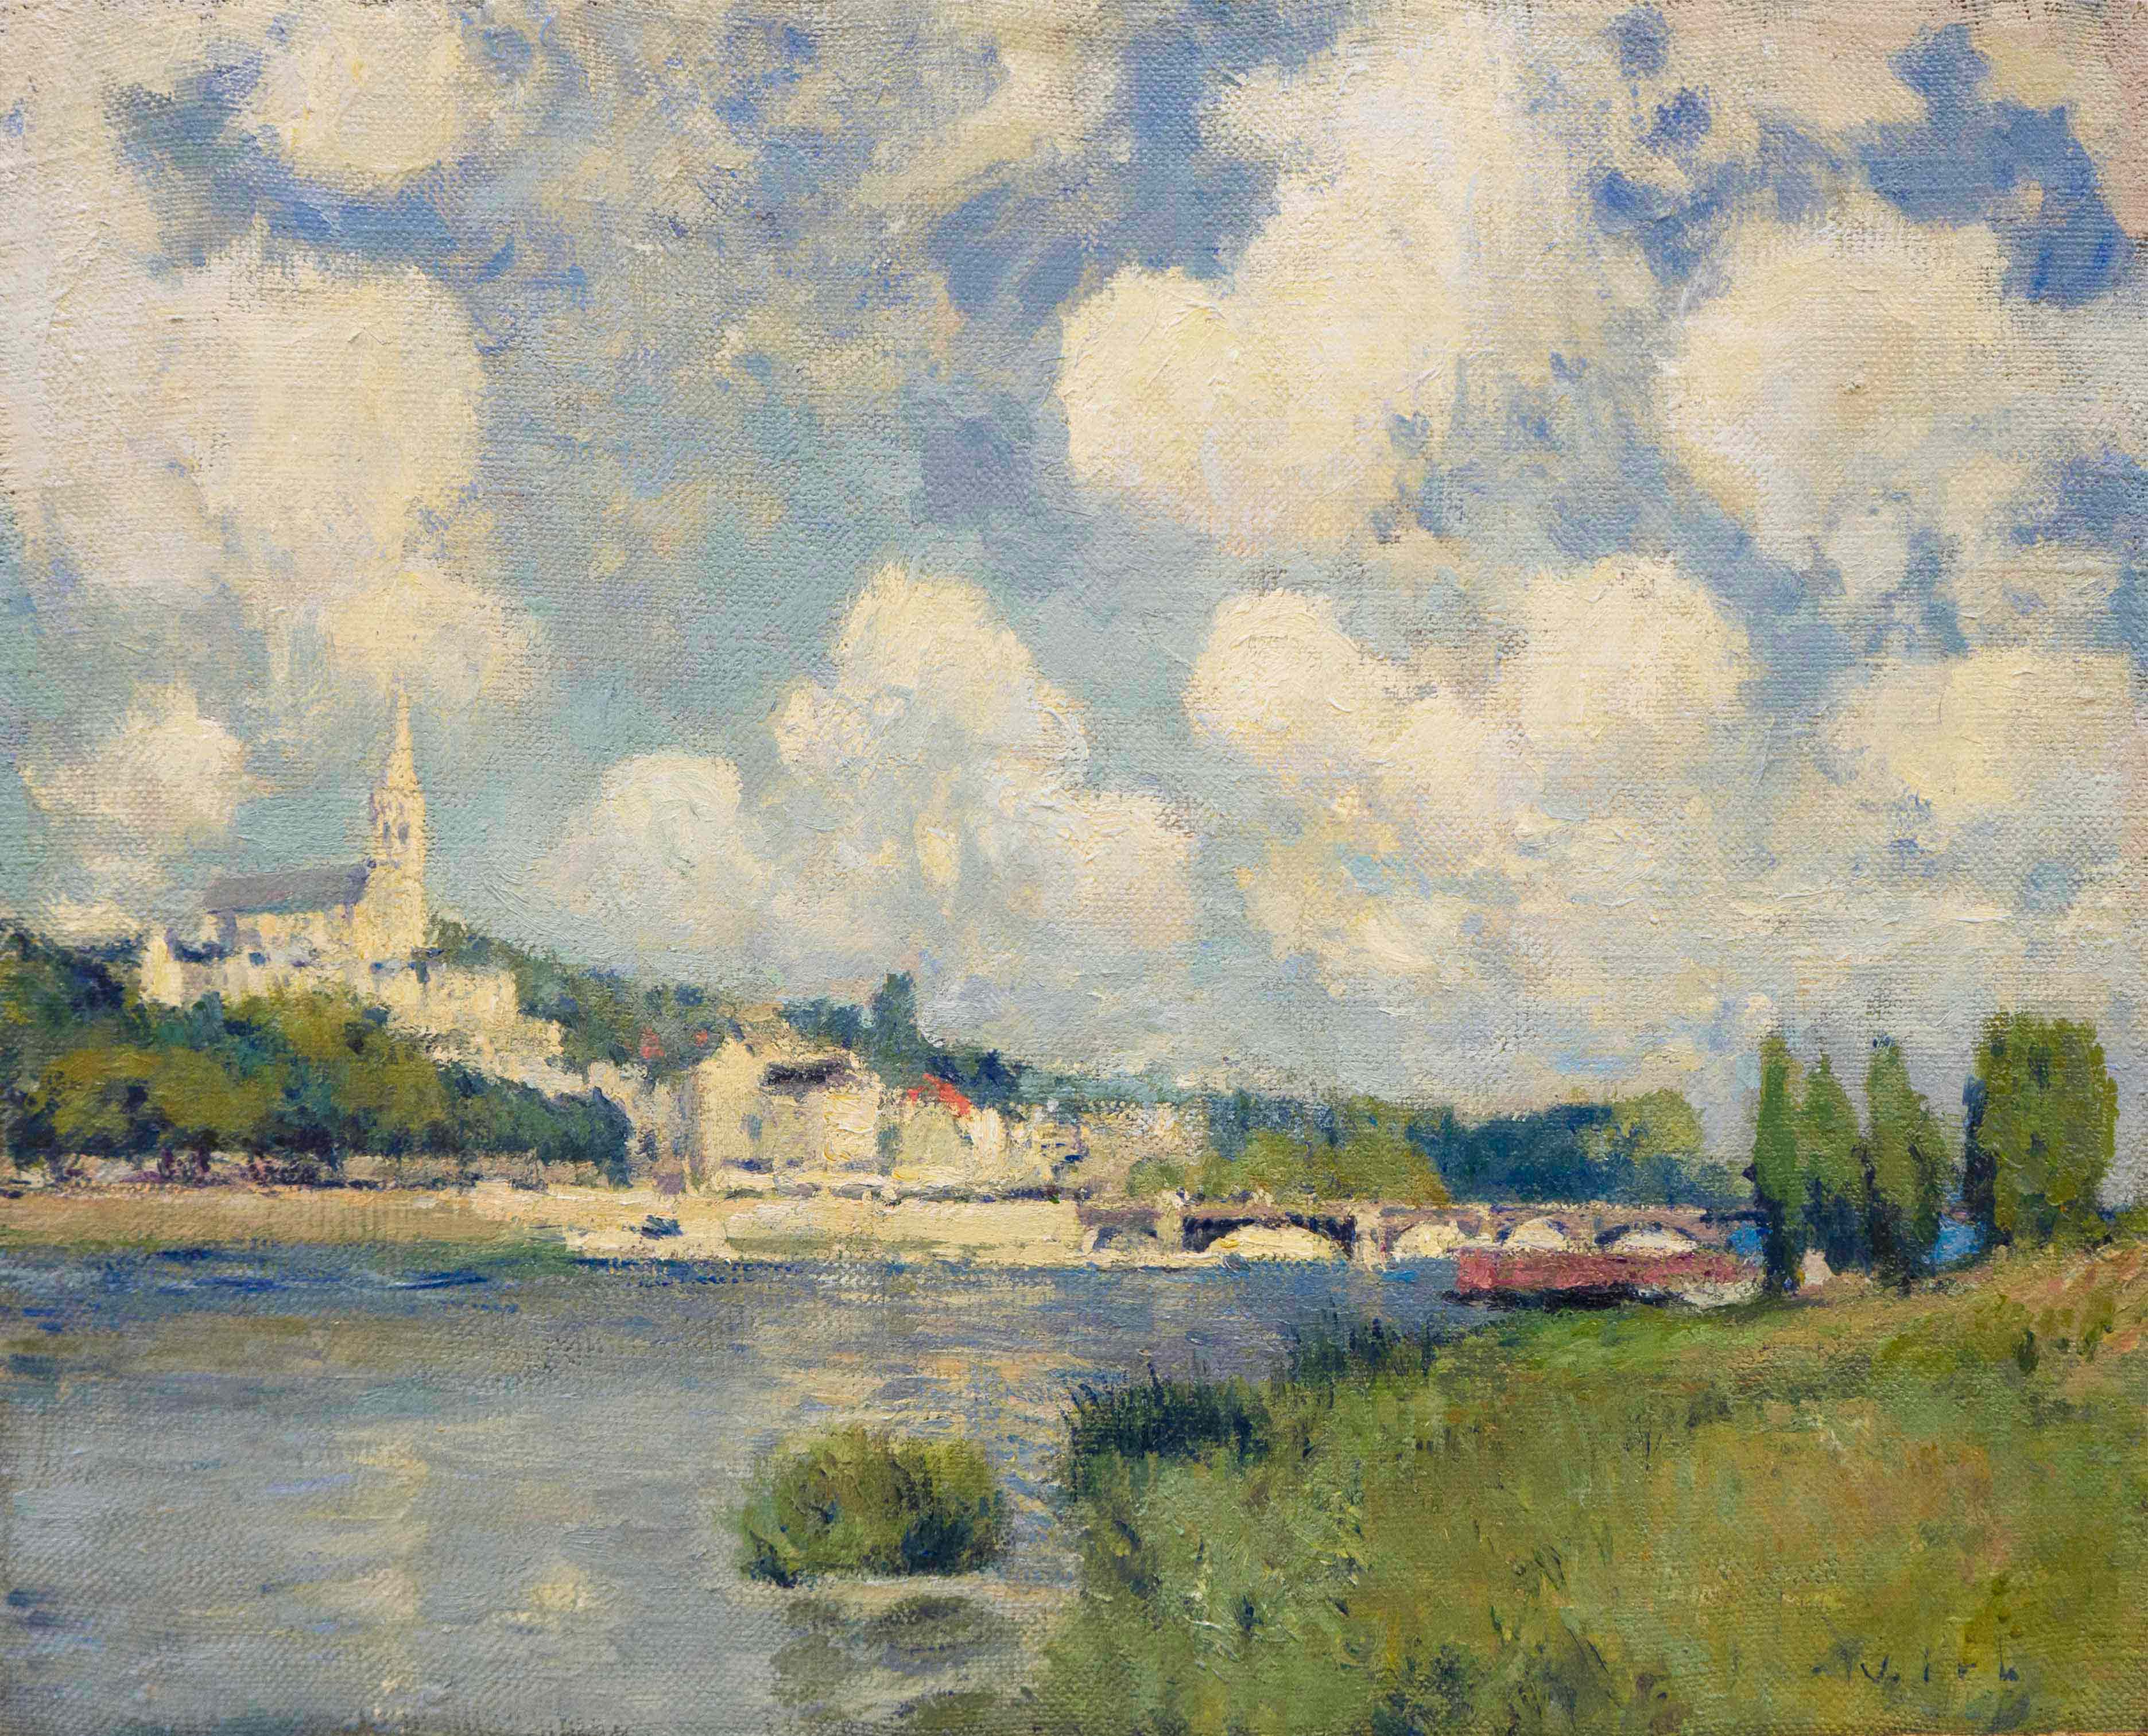 The River at Saint Cloud, Vladimir Kirillov, Buy the painting Oil